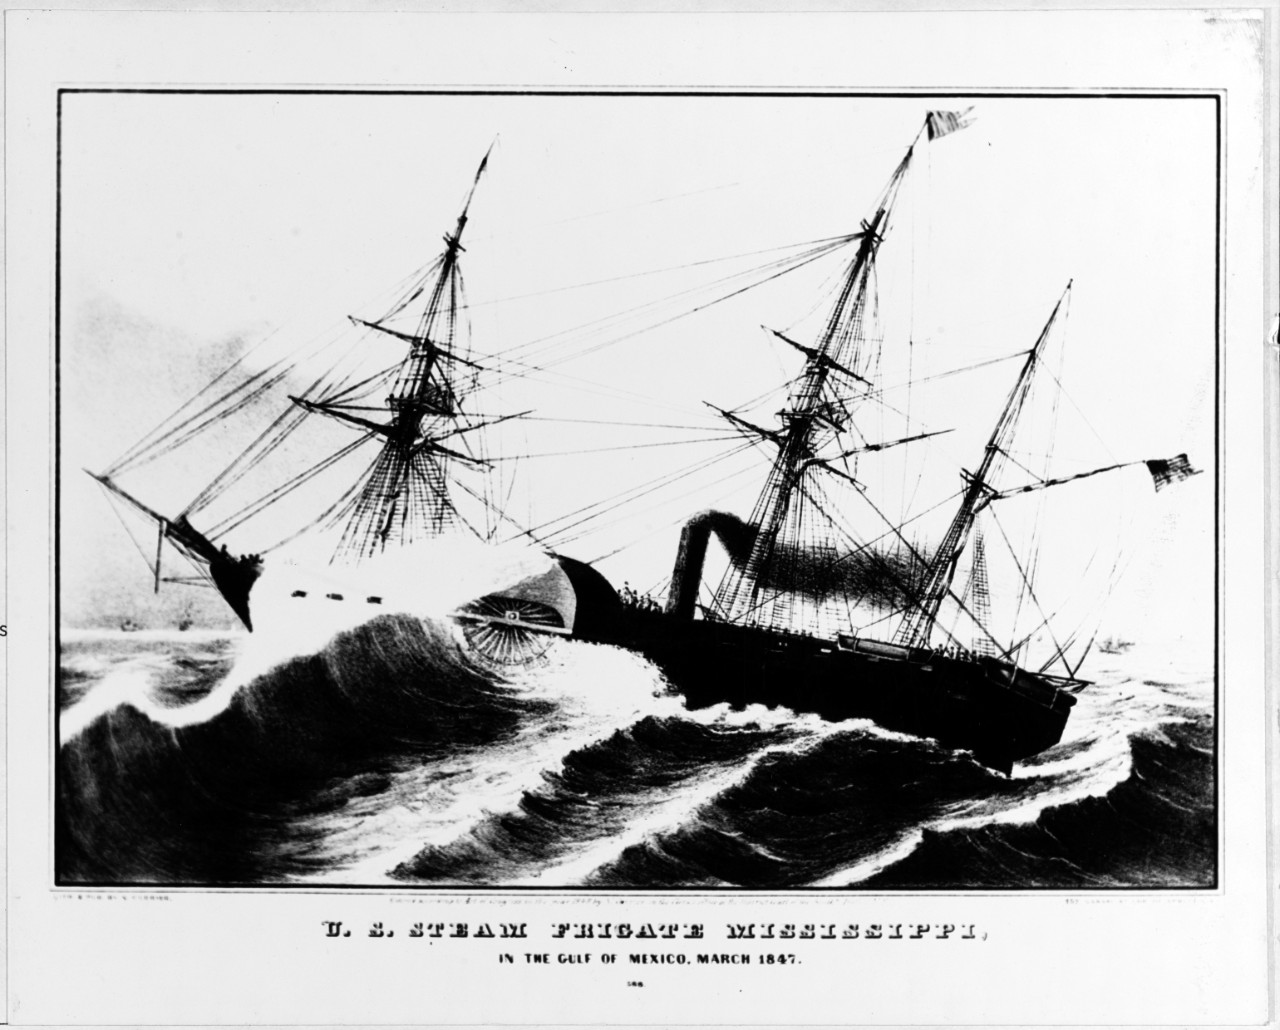 U.S. Steam frigate MISSISSIPPI